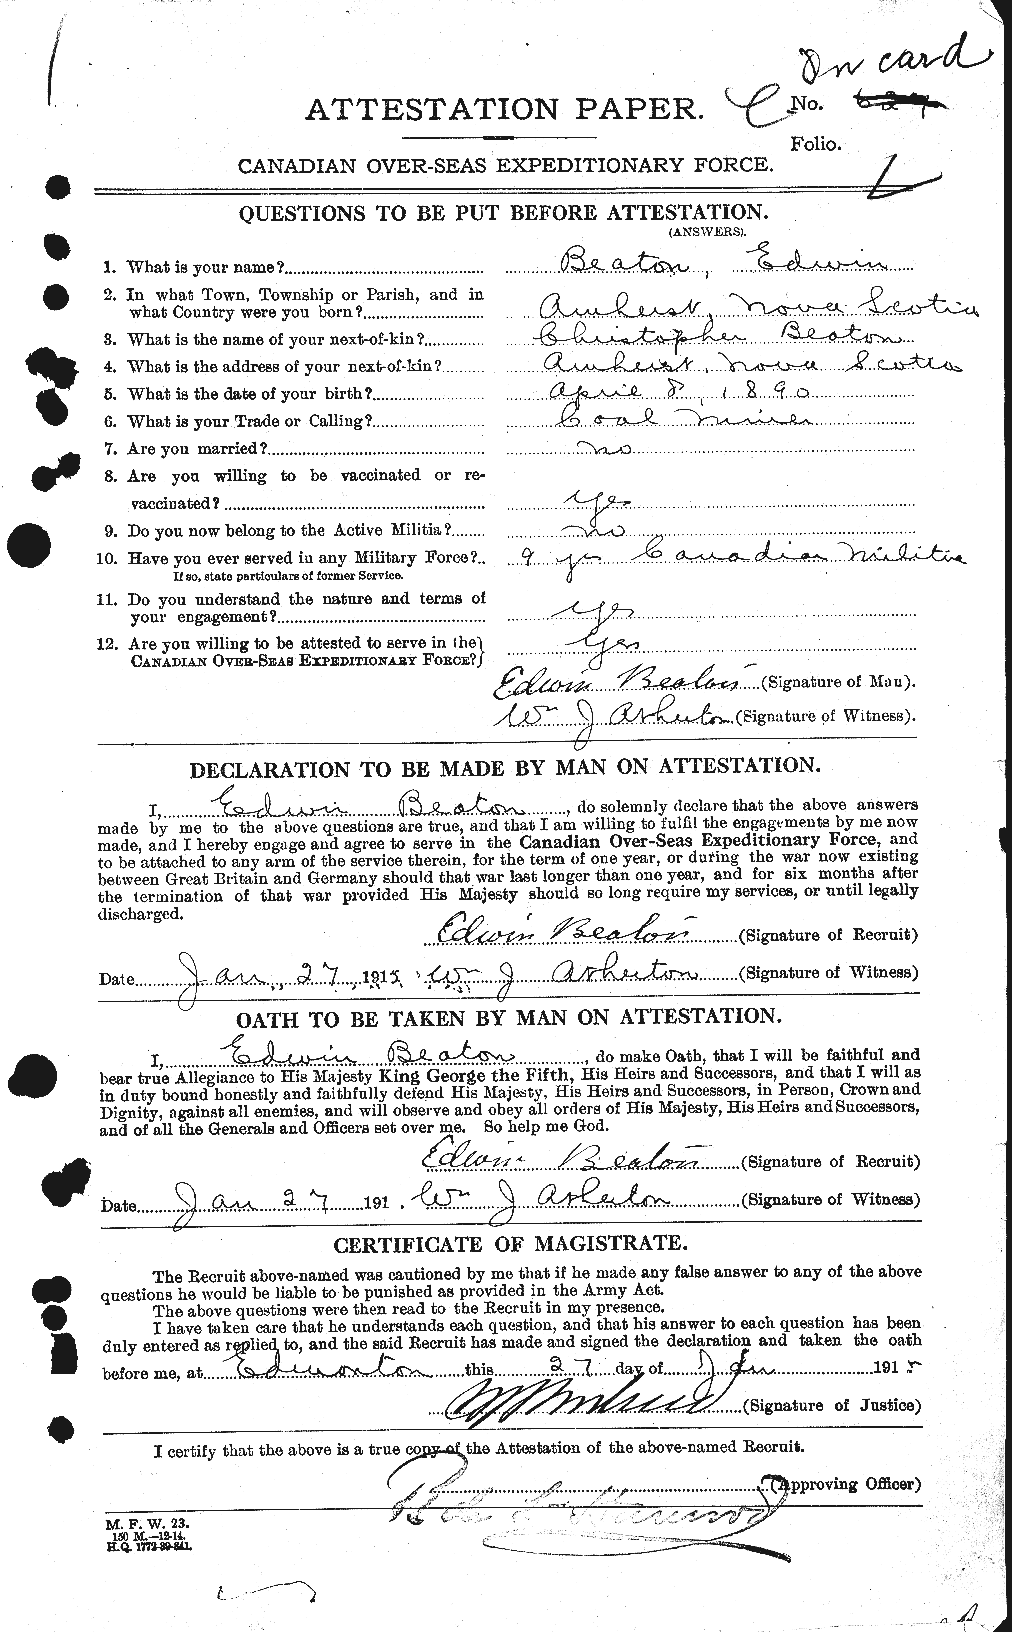 Dossiers du Personnel de la Première Guerre mondiale - CEC 230496a